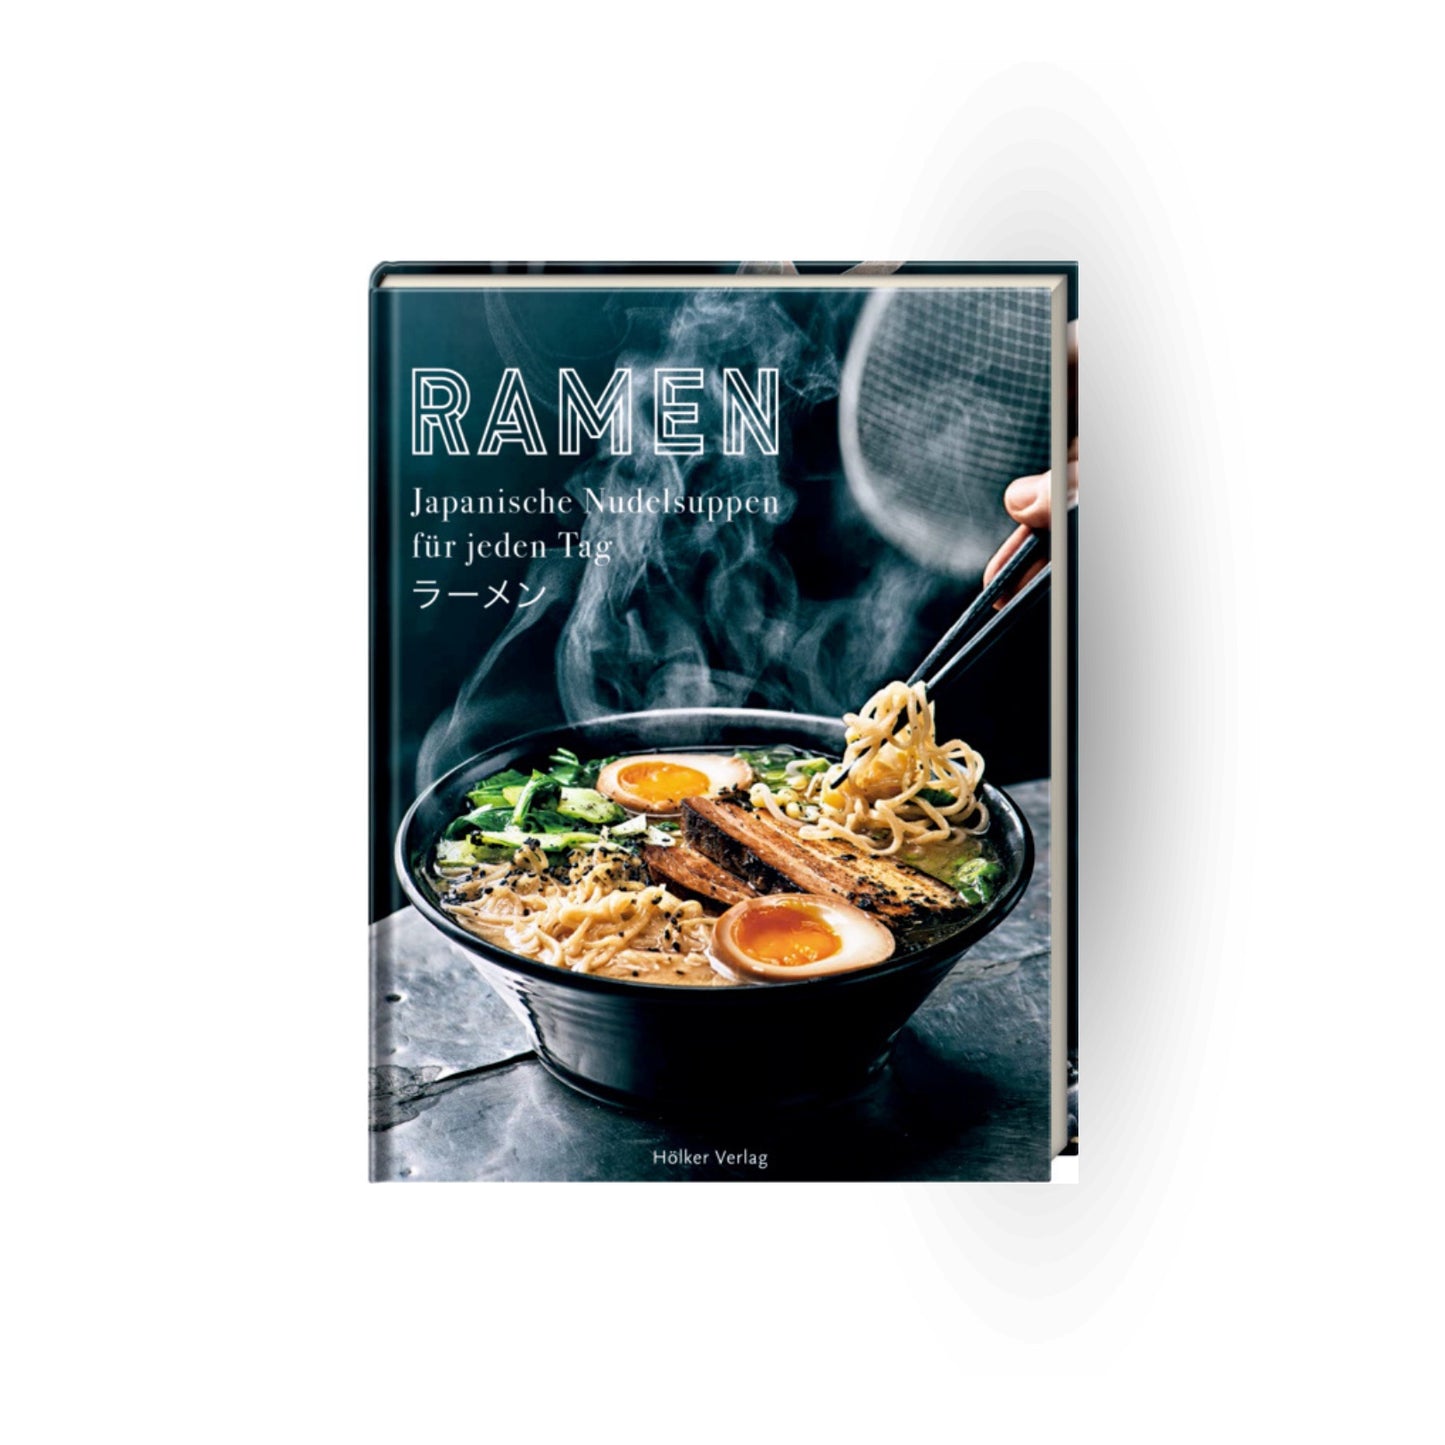 Kochbuch "Ramen - Japanische Nudelsuppen für jeden Tag"